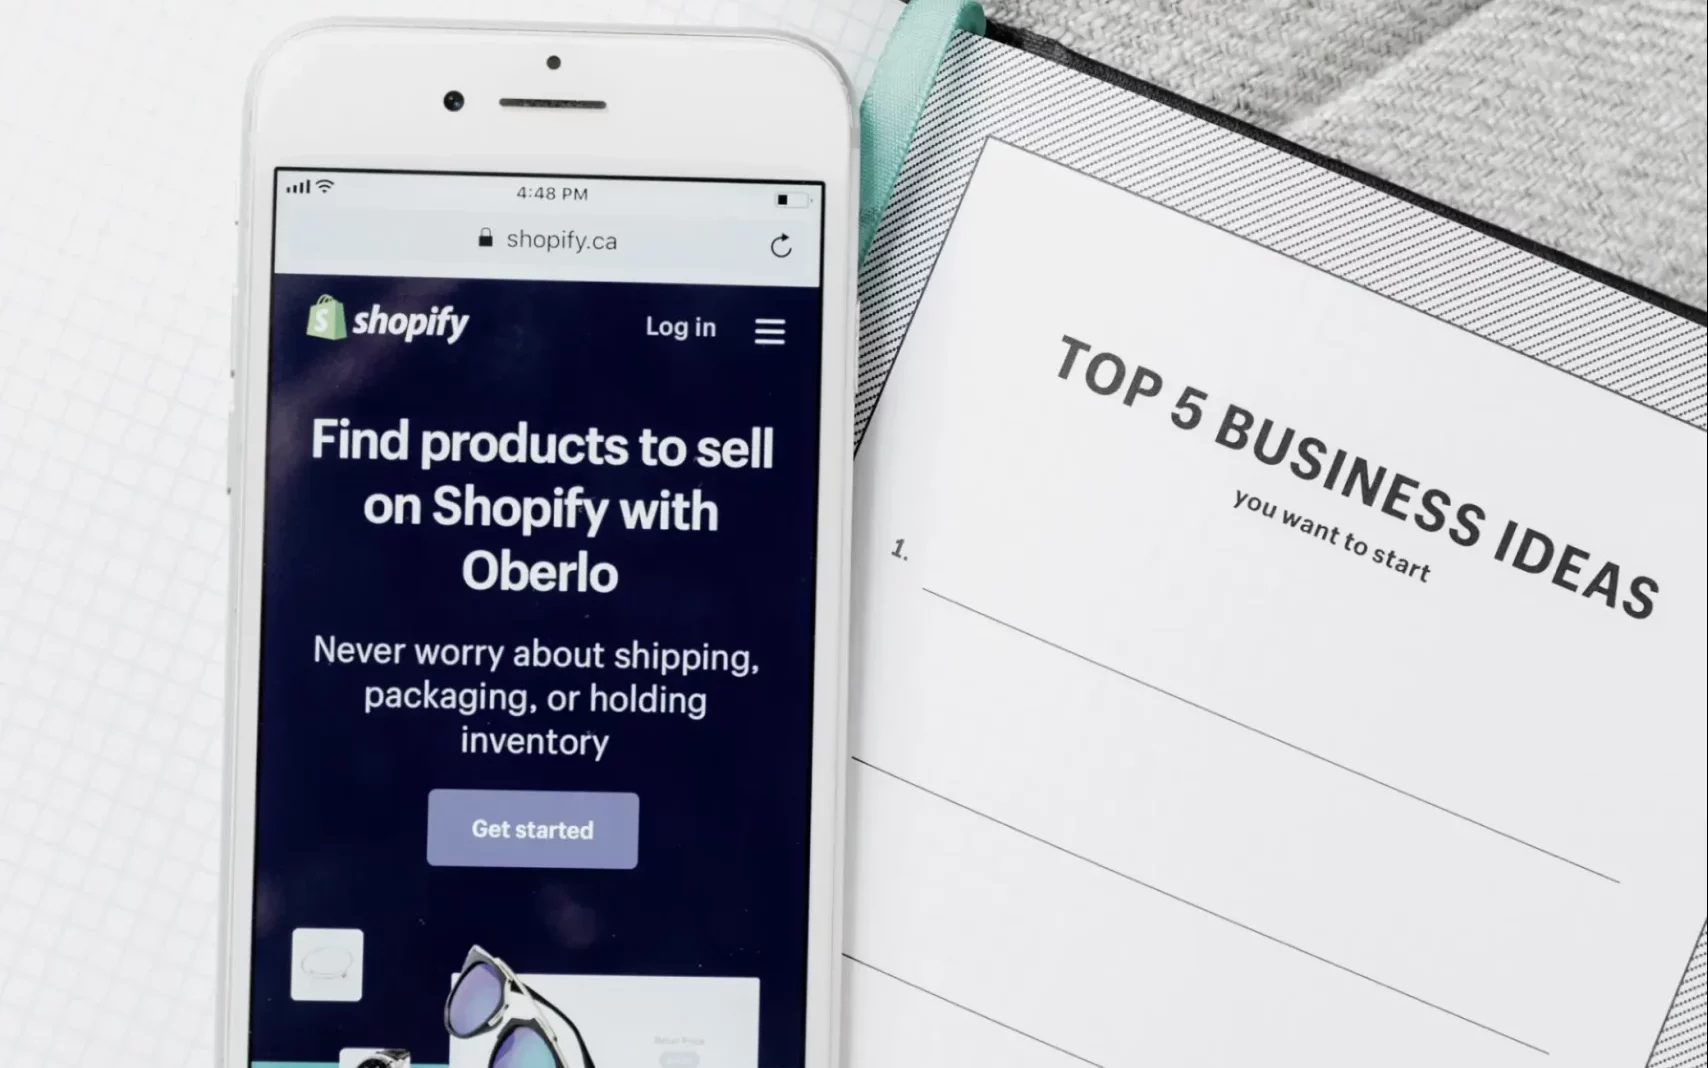 Smartphone mit geöffneter Shopify-Anwendung, das auf einem Notizblock mit der Aufschrift "Top 5 Business Ideas" liegt